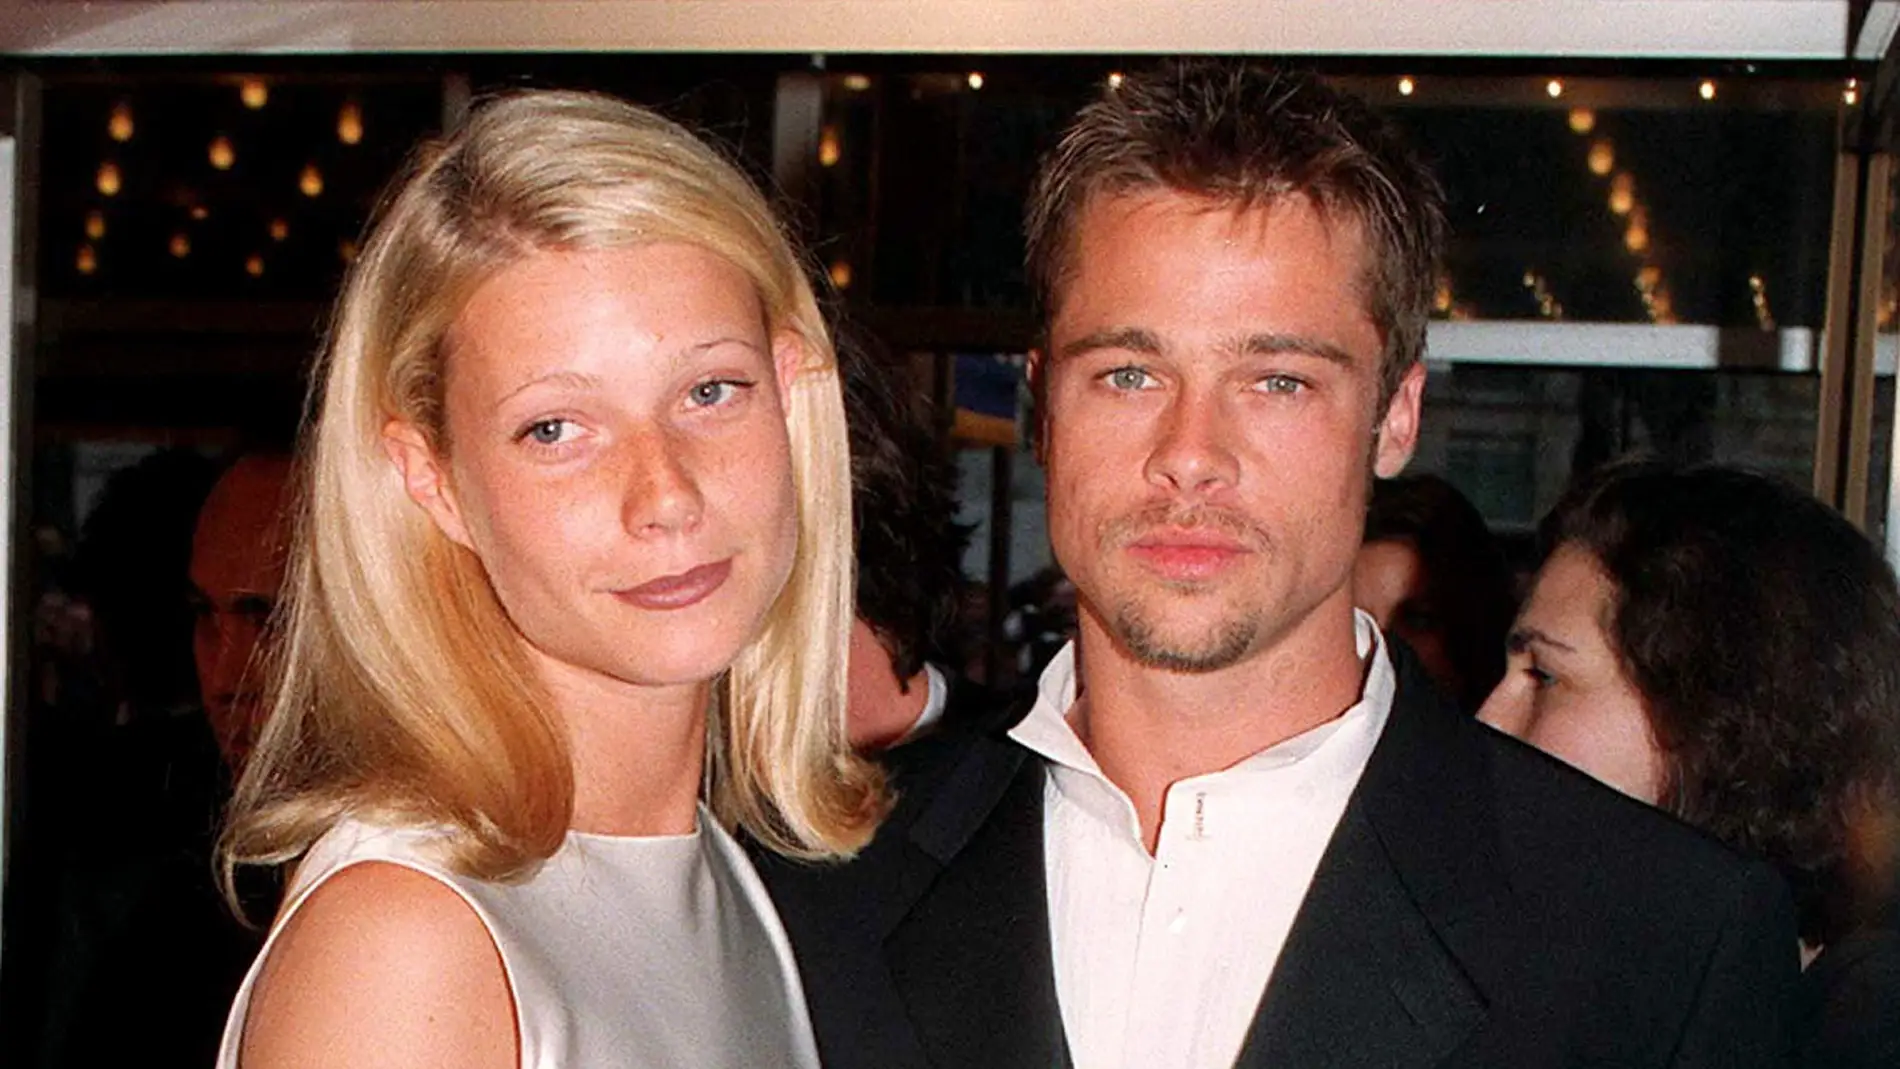 Gwyneth Paltrow y Brad Pitt cuando eran pareja en losa años 90